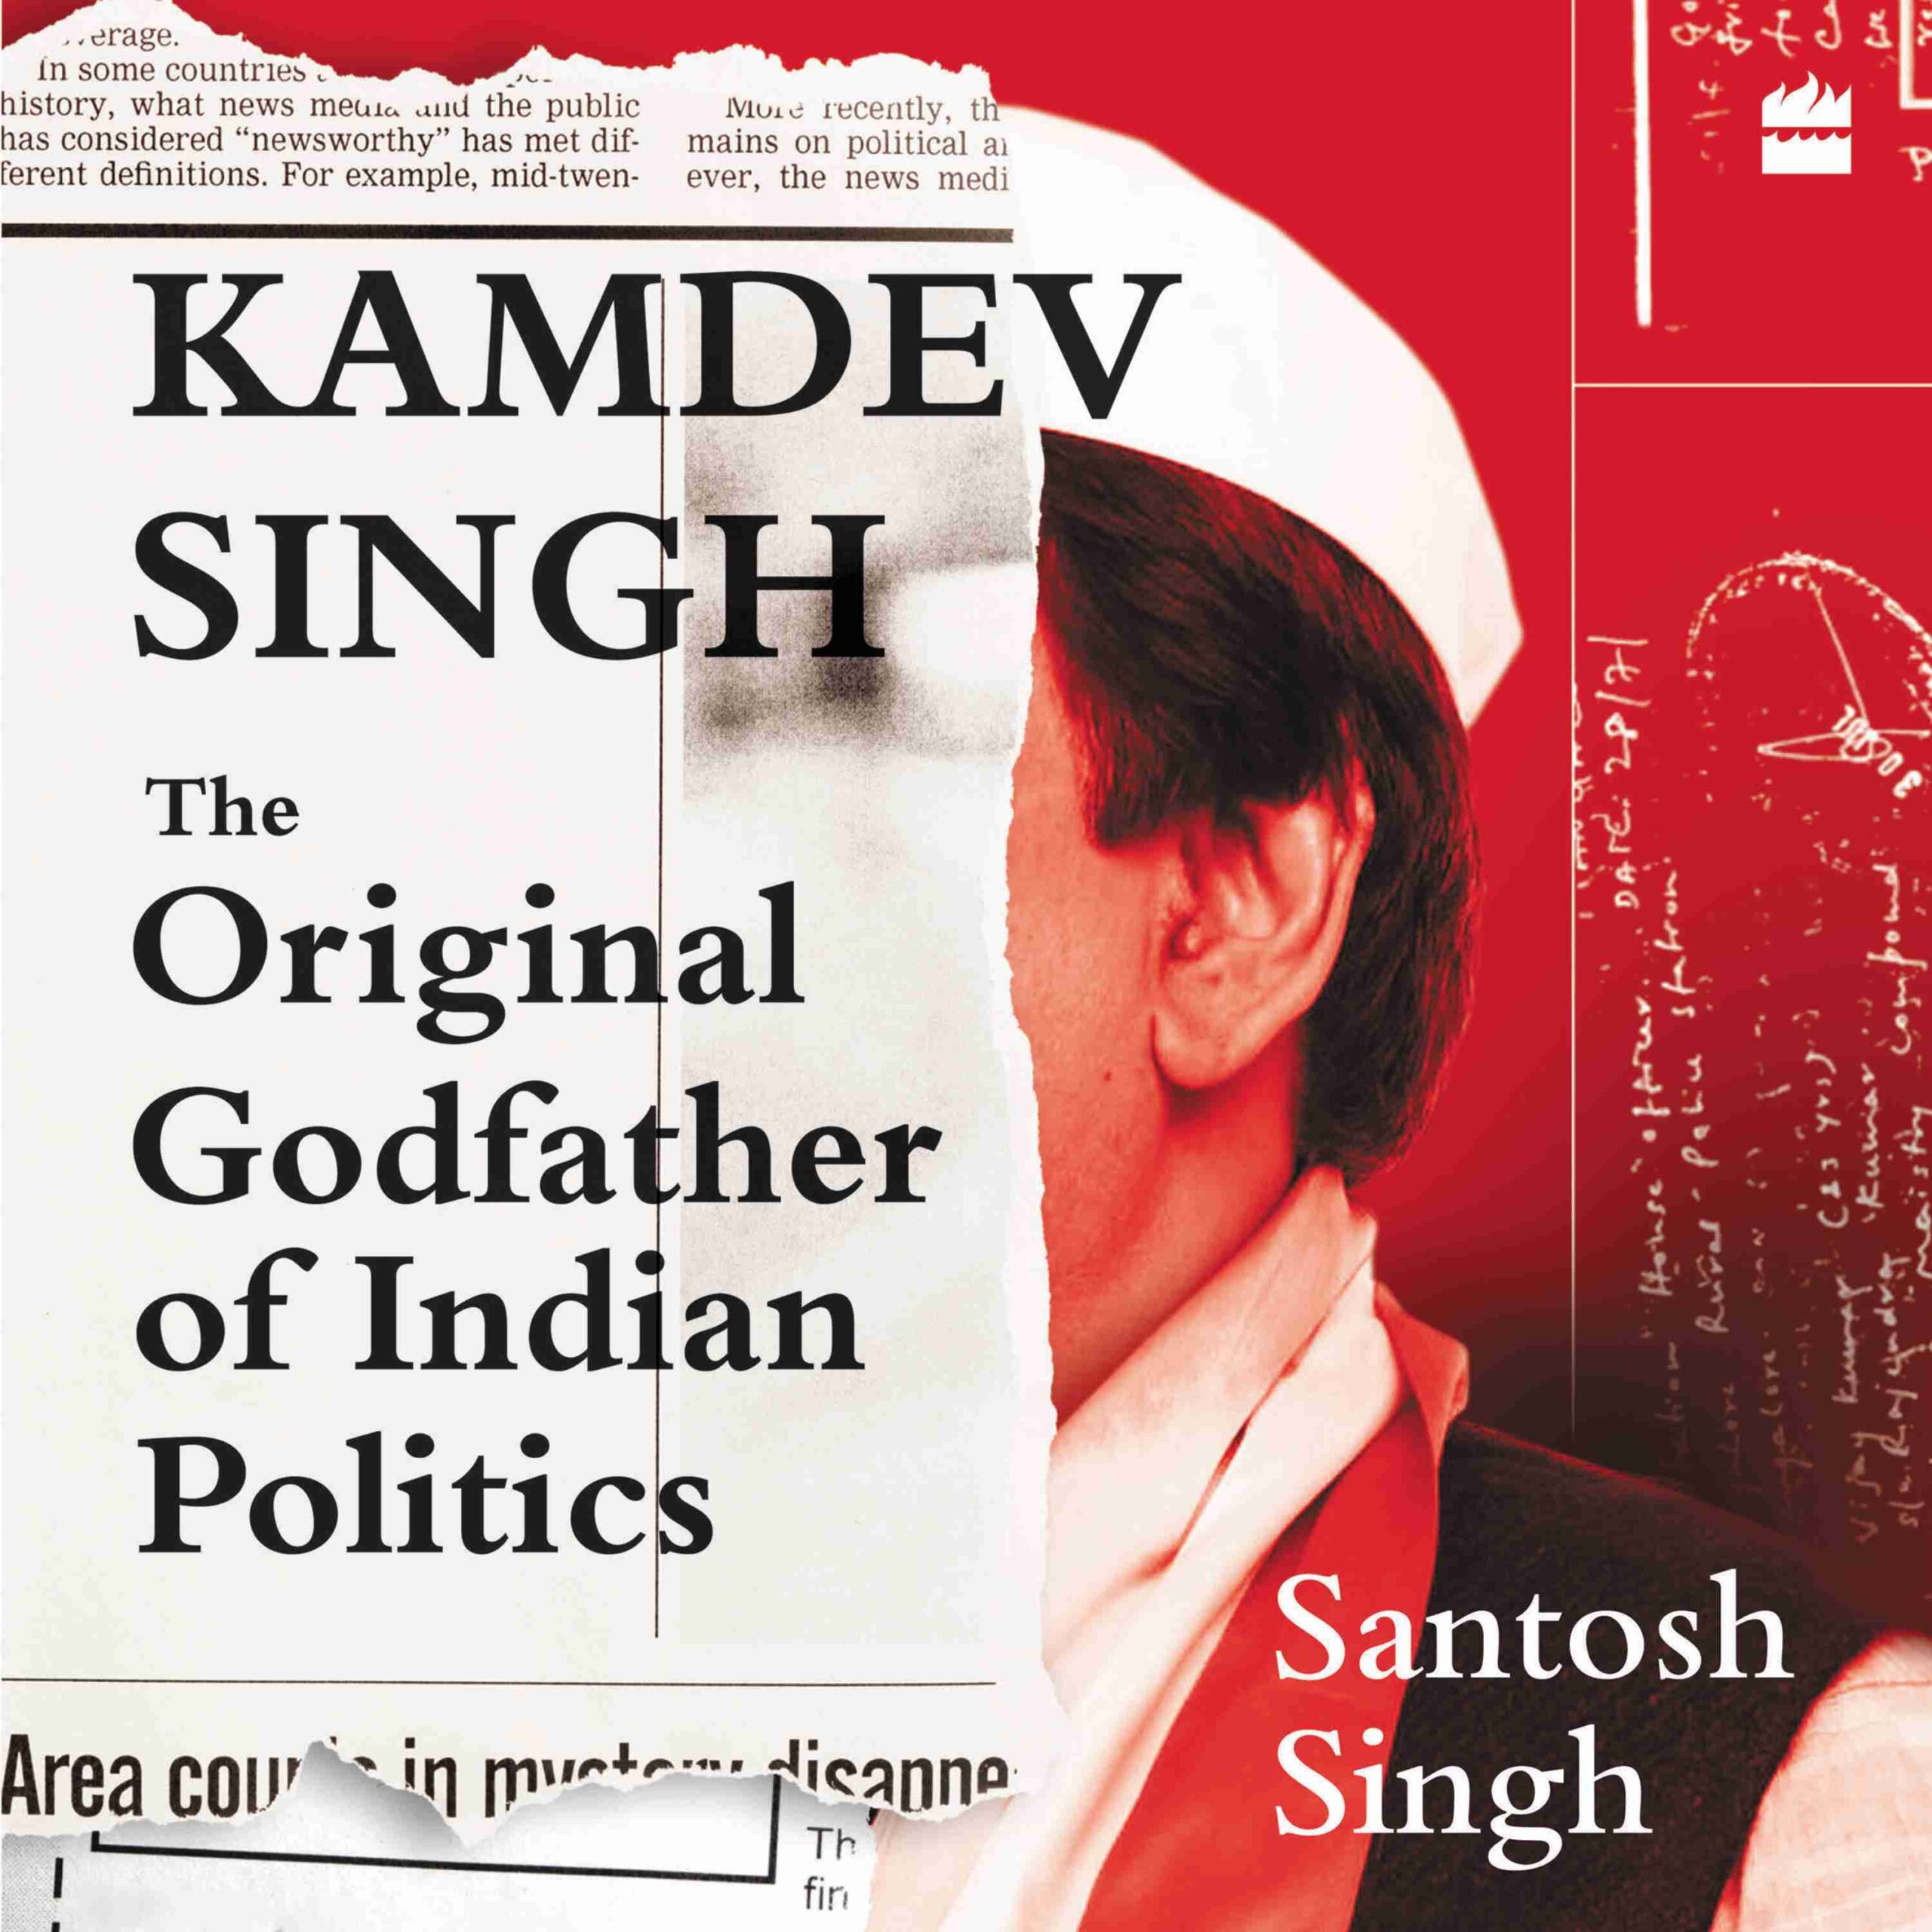 Kamdev Singh